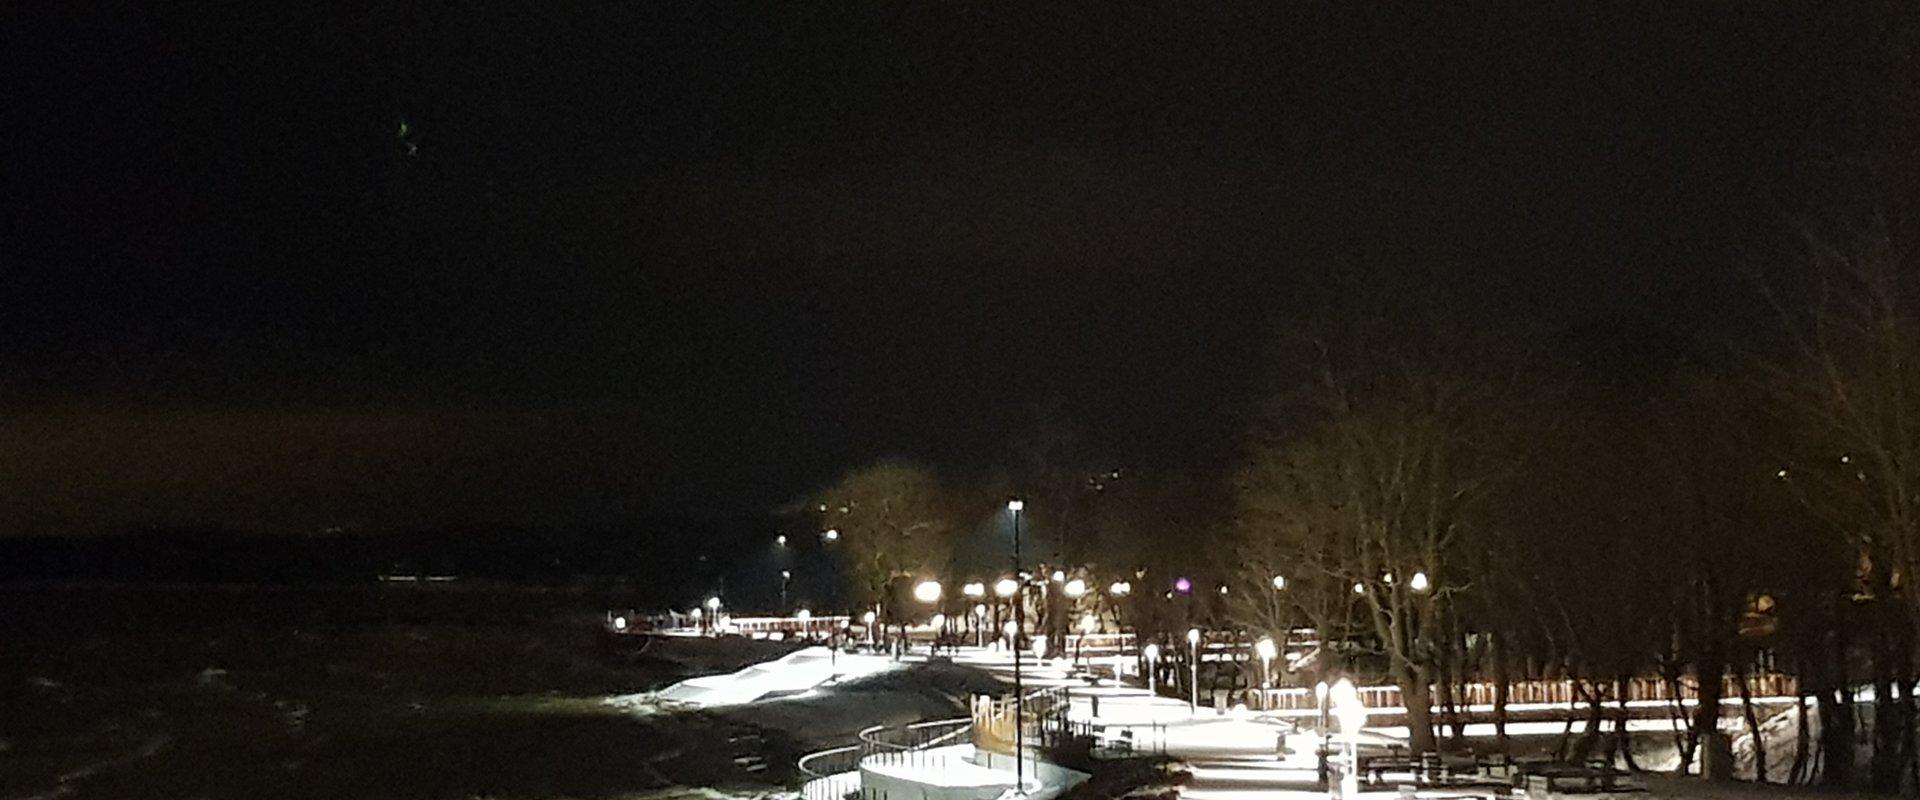 Strandpromenade von Sillamäe im Winter von Laternen beleuchtet